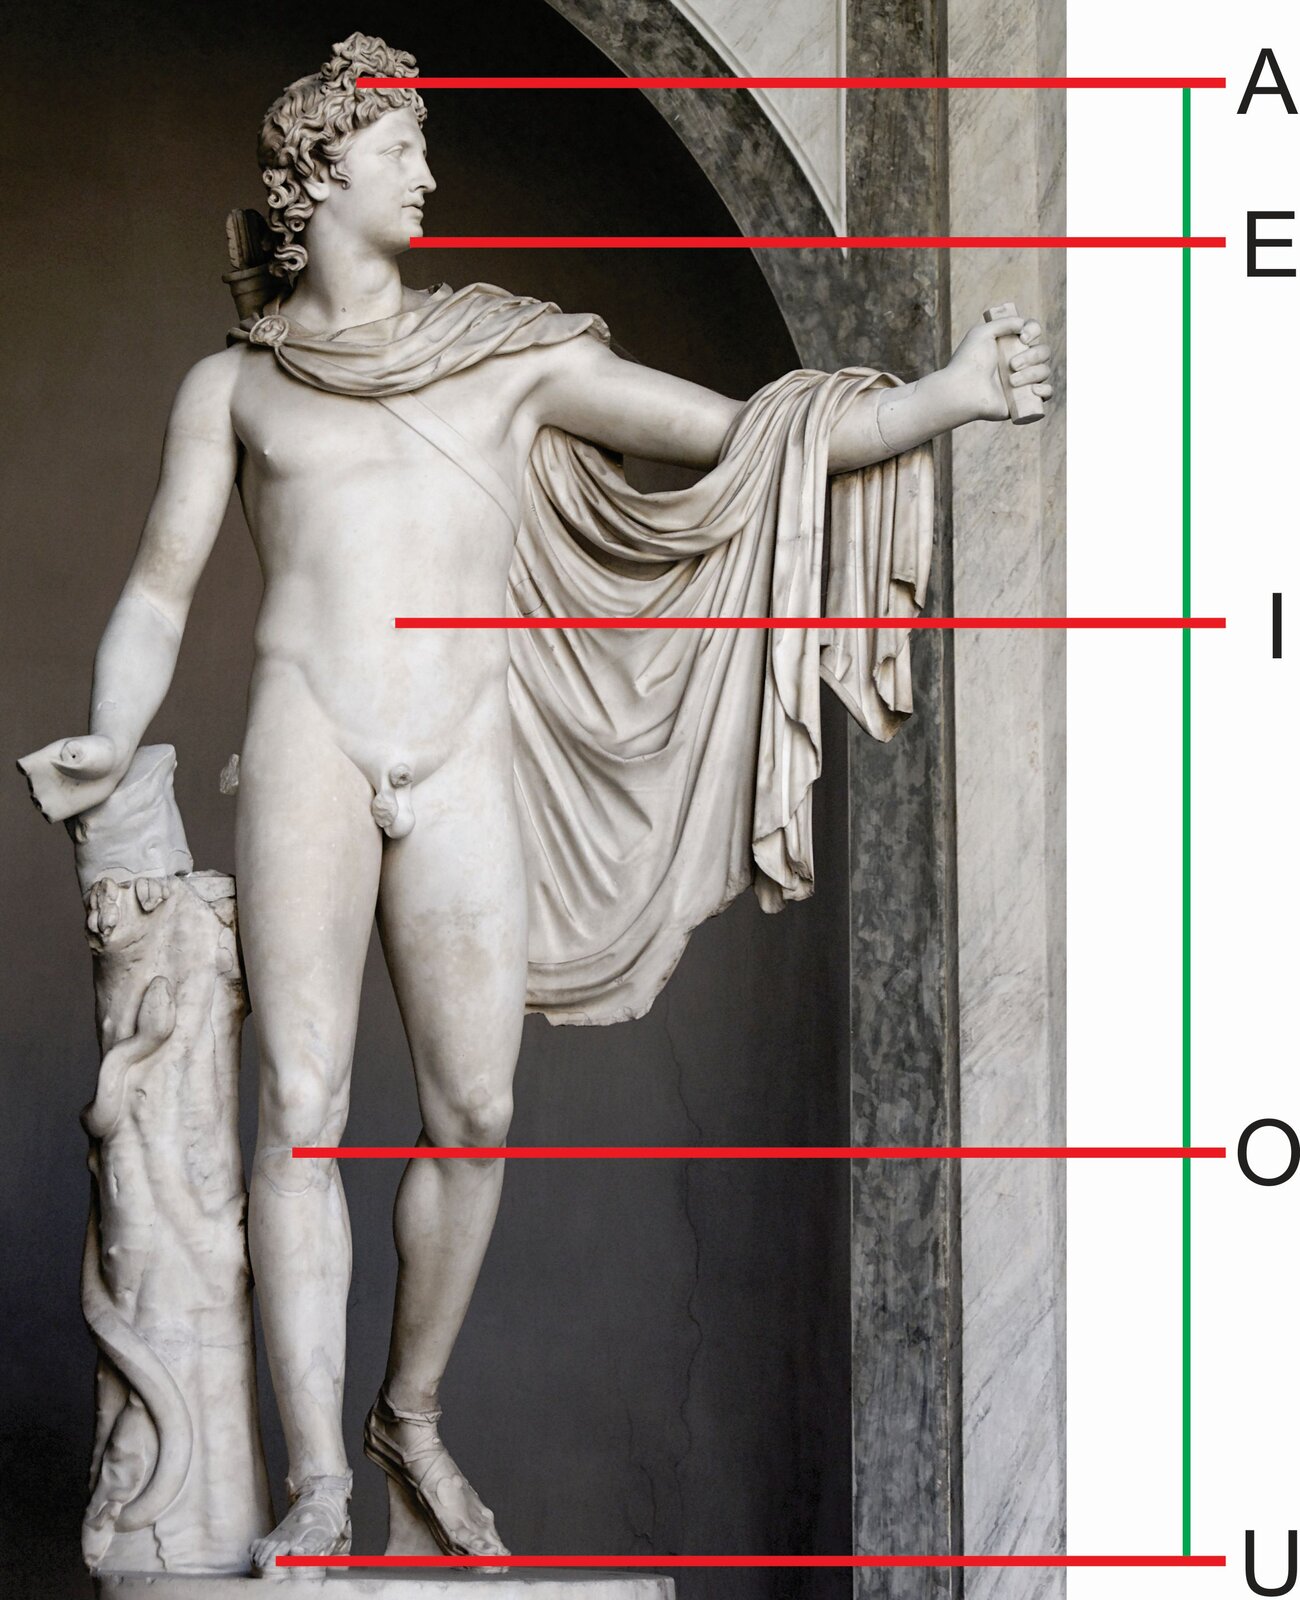 Ilustracja przedstawia rzeźbę „Apollo Belwederski”. Ukazuje stojącego, umięśnionego mężczyznę. Górną część ciała okrywa spięta na prawym ramieniu, przewieszona przez wyciągniętą rękę i przerzucona do tyłu szata. Z prawego ramienia na lewy bok zachodzi pas podtrzymujący kołczan, znajdujący się na plecach. Ujęta w kontrapoście postać podpiera się prawą ręką na pniu drzewa z kilkoma listkami, który oplątany jest przez węża. Na ilustrację naniesionych zostało pięć poziomych odcinków w kolorze czerwonym, oznaczonych literami: A, E, I, O, U. Po prawej stronie znajduje się pionowa, zielona linia, na której zaznaczone są te punkty. Na ilustracji widoczny jest między innymi podział odcinka między pępkiem a stopą, czyli oznaczeniem IU. Według złotego podziału stosunek odcinka IO względem OU równy jest stosunkowi odcinka IU względem IO.